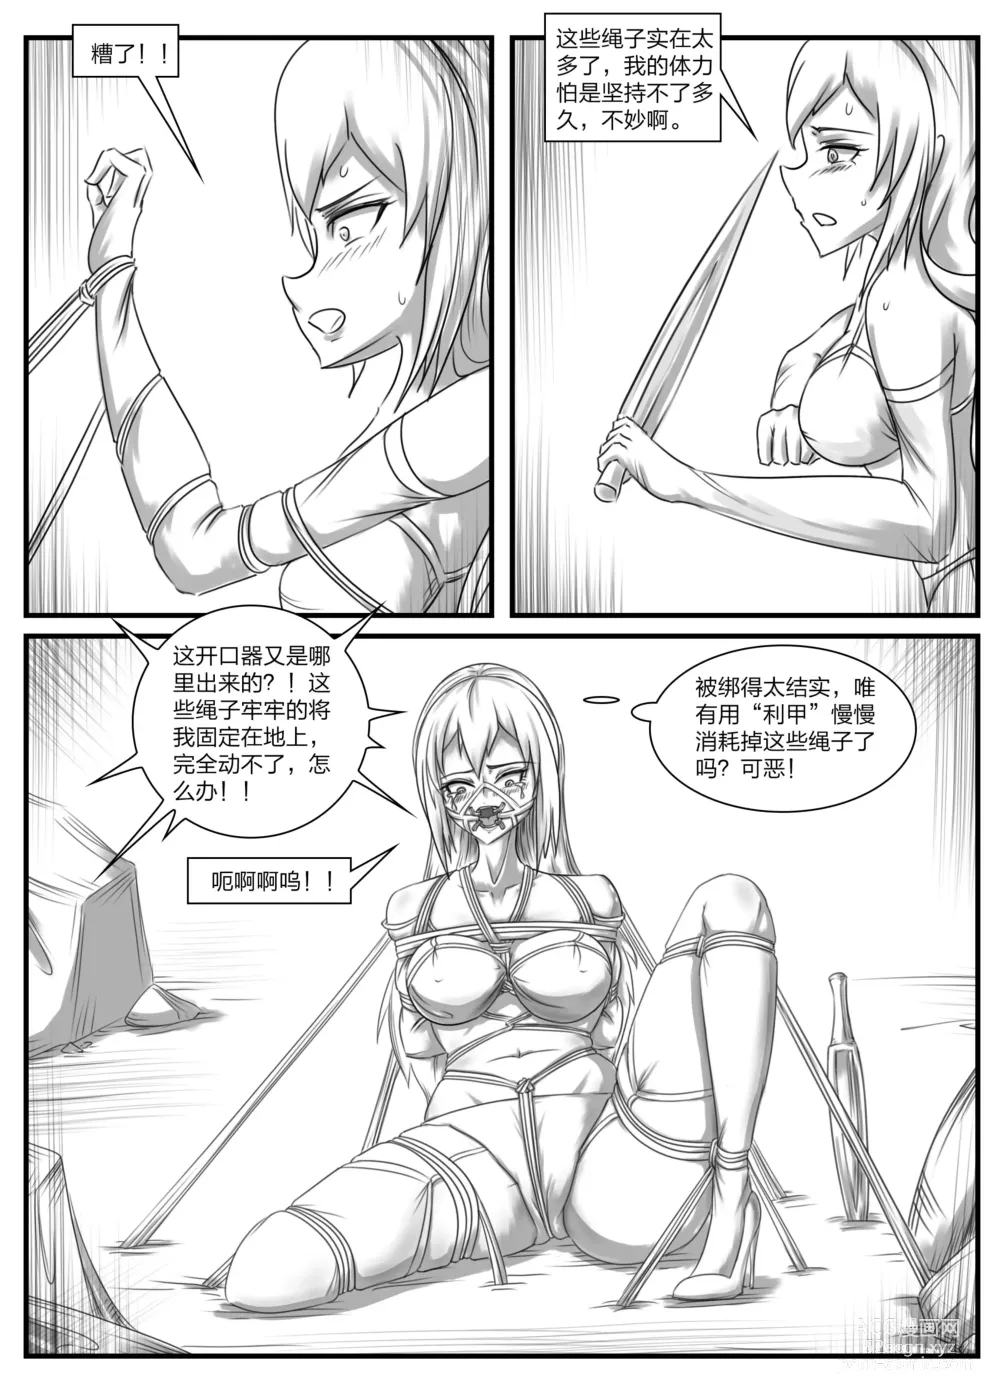 Page 11 of doujinshi 《被困游戏世界2》